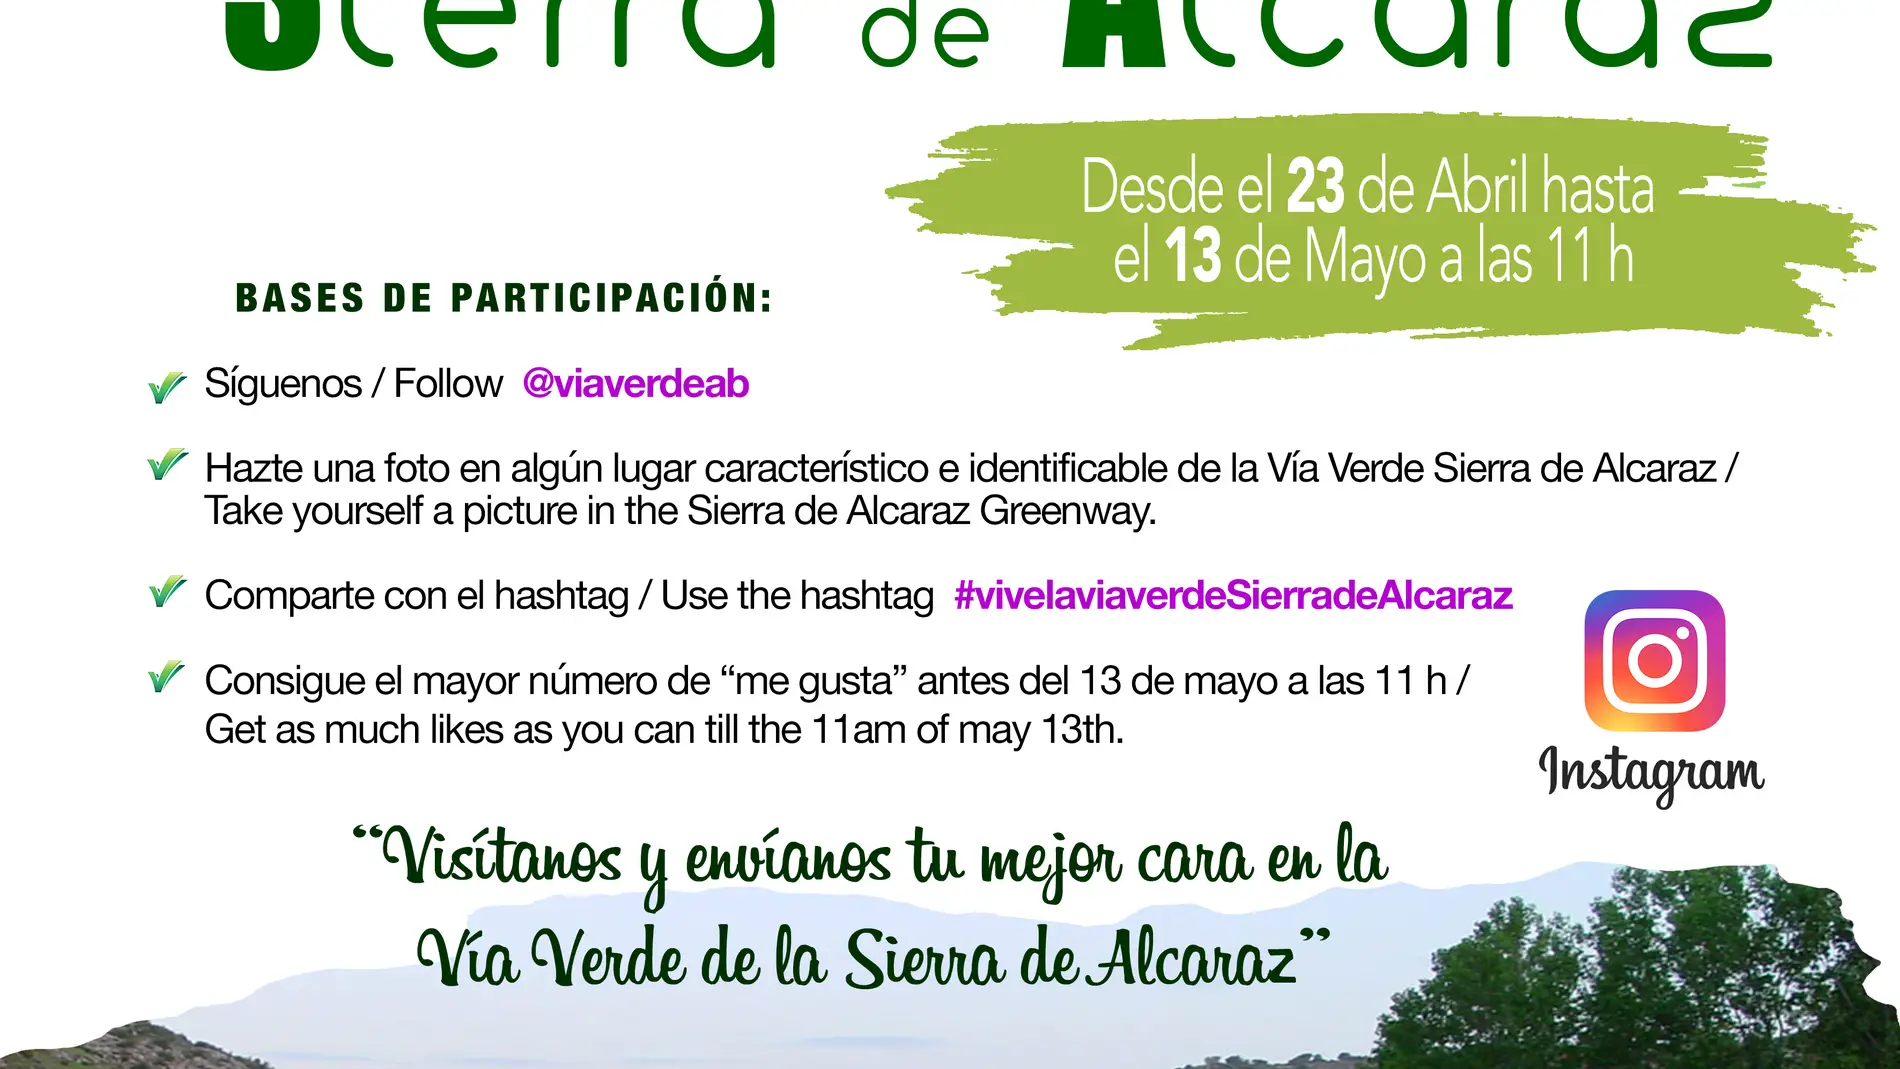 La Diputación de Albacete organiza un concurso fotográfico en ‘Instagram’ protagonizado por la Vía Verde Sierra de Alcaraz 